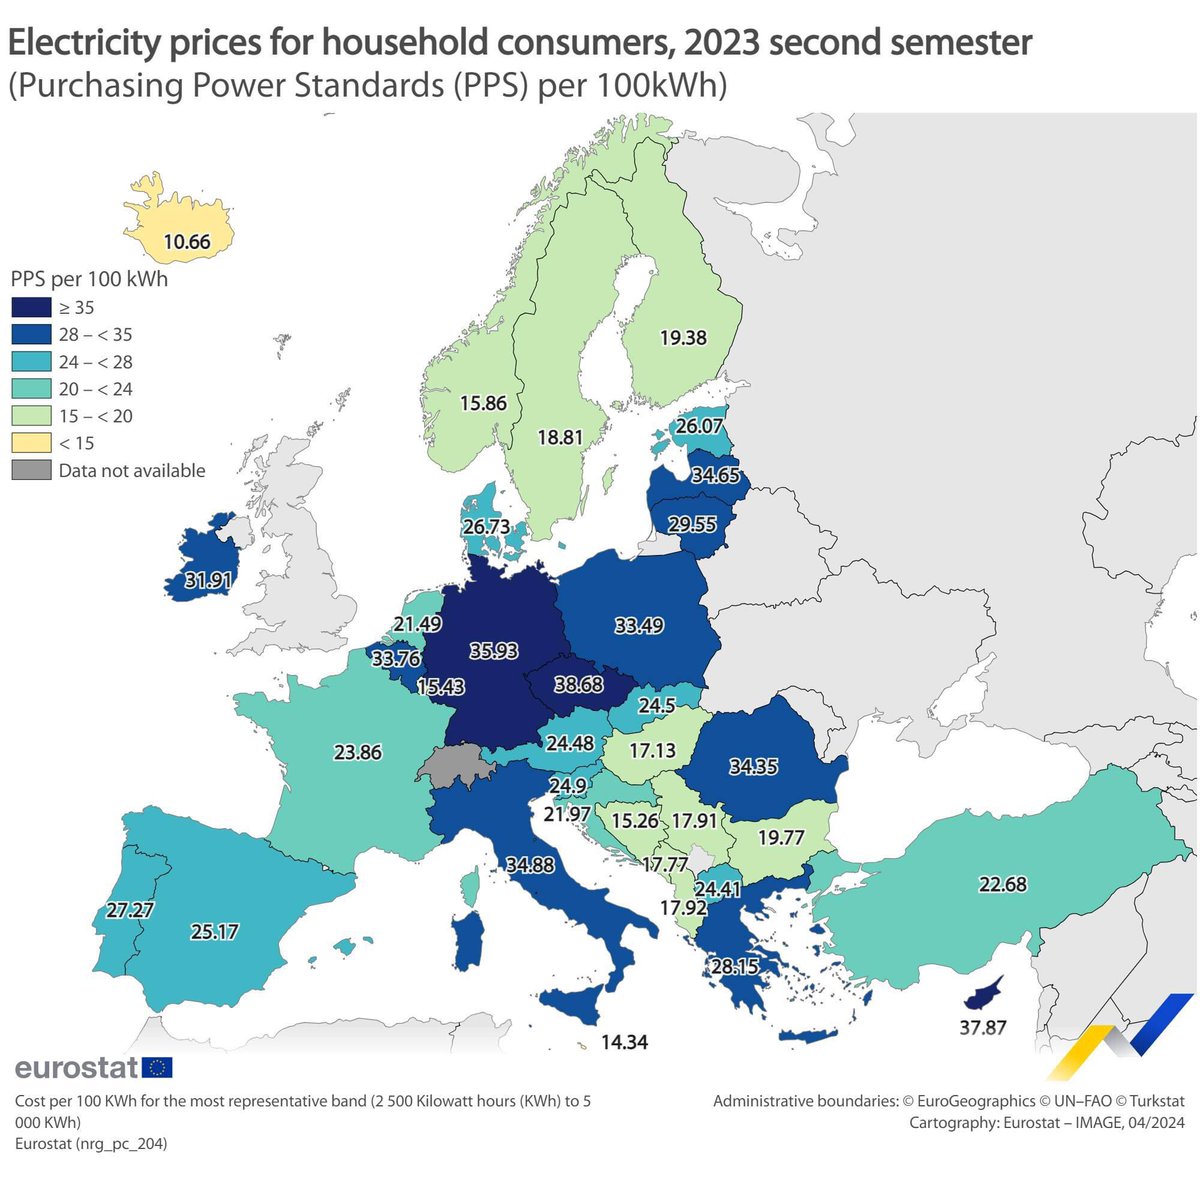 Prezzi di gas ed elettricità nell'UE, secondo semestre 2023. Come vedete Germania e Italia hanno fatto un affarone a mettere le sanzioni alla Russia.